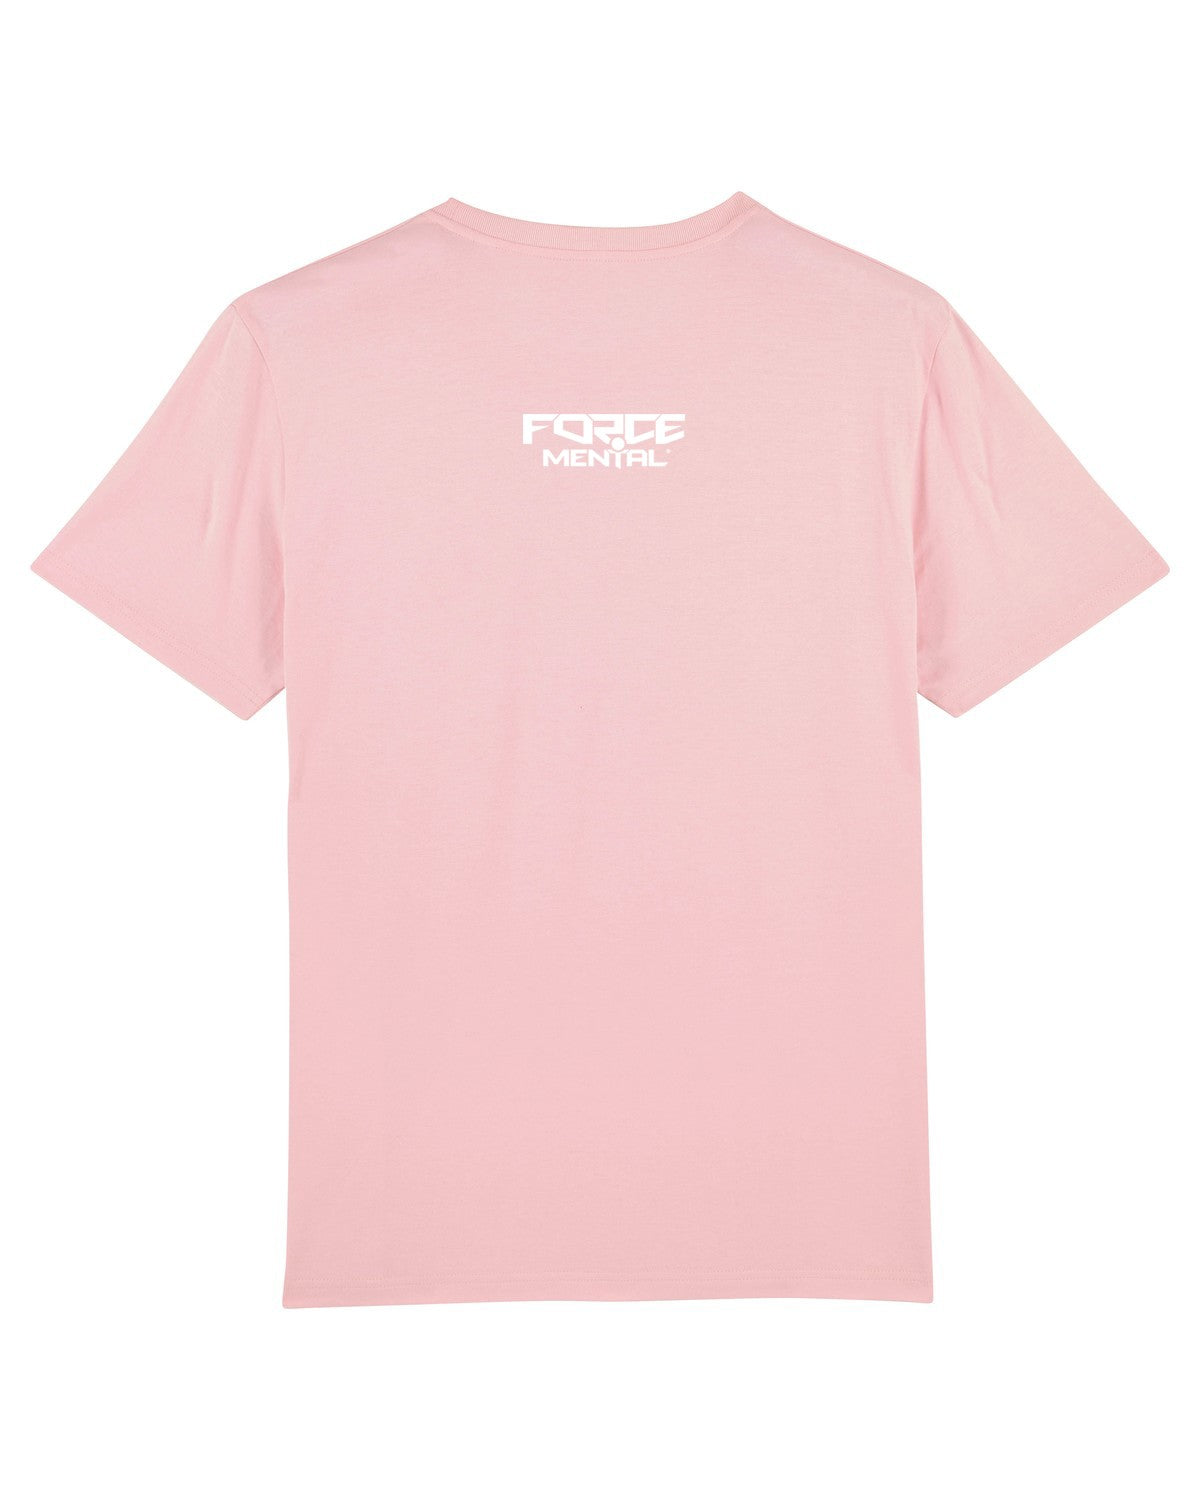 tee-shirt pink melrose